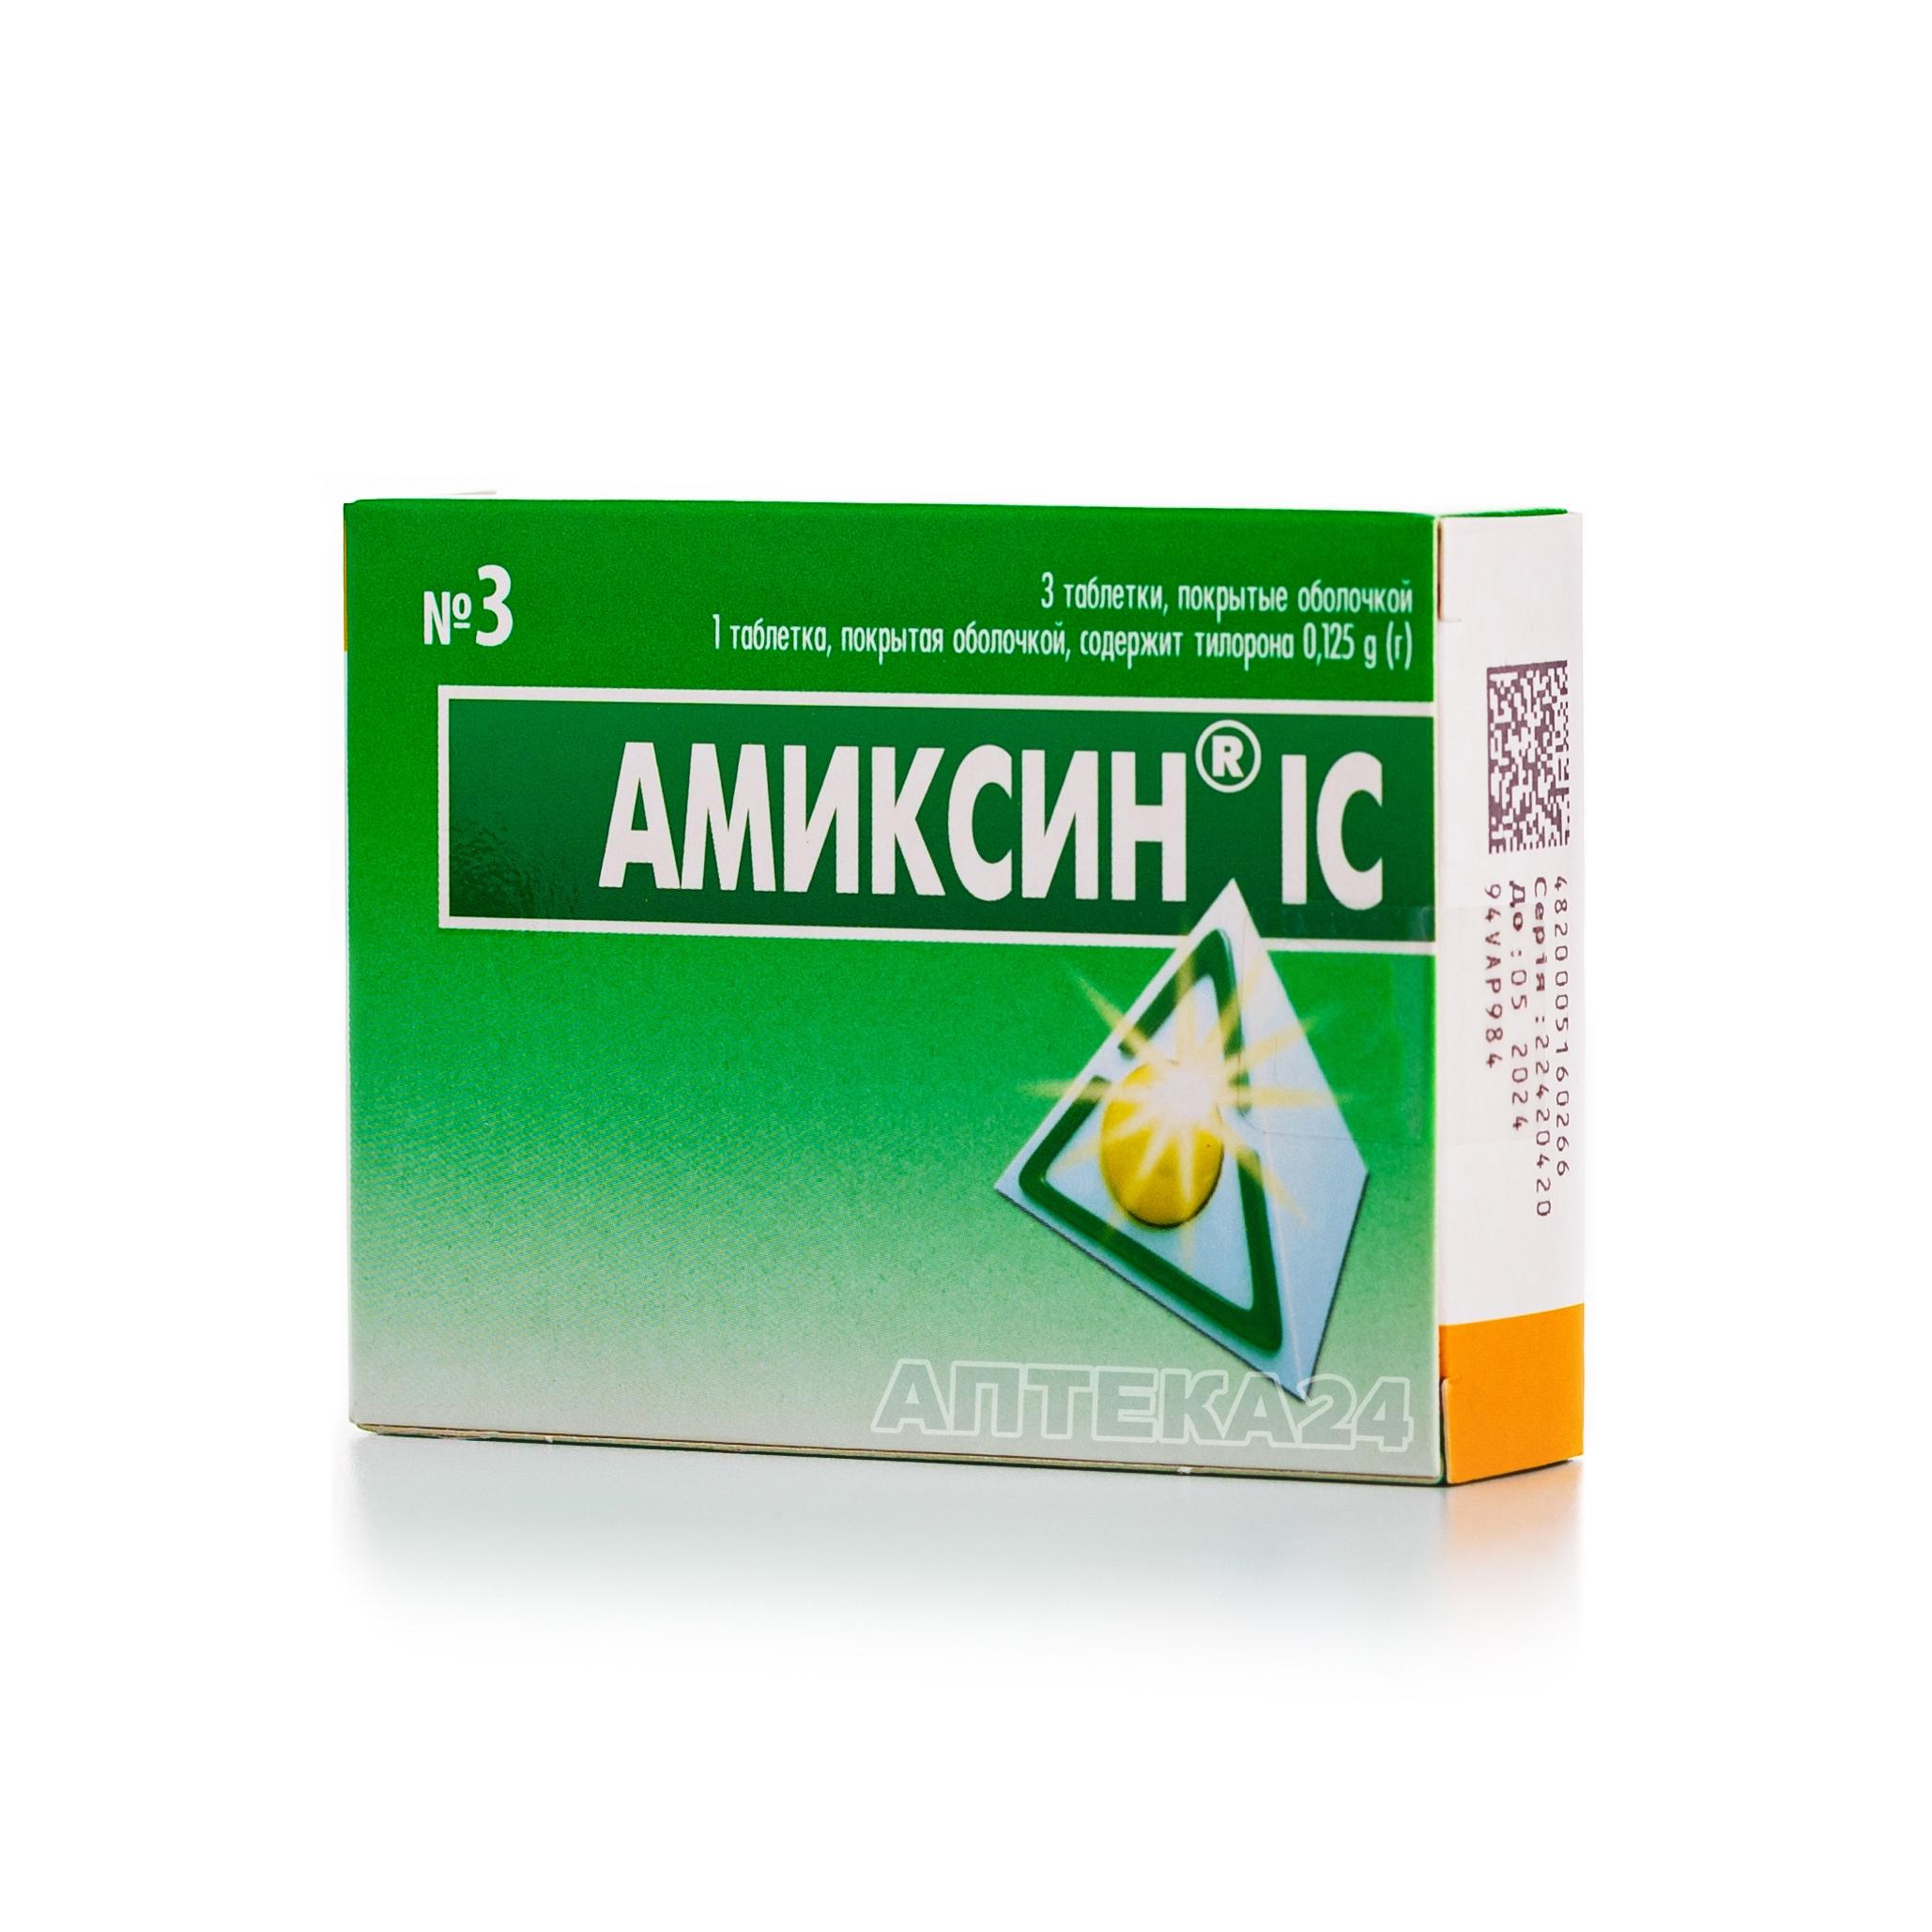 Амиксин® IC 0.125 г N3 таблетки_6005b5993b4cb.jpeg